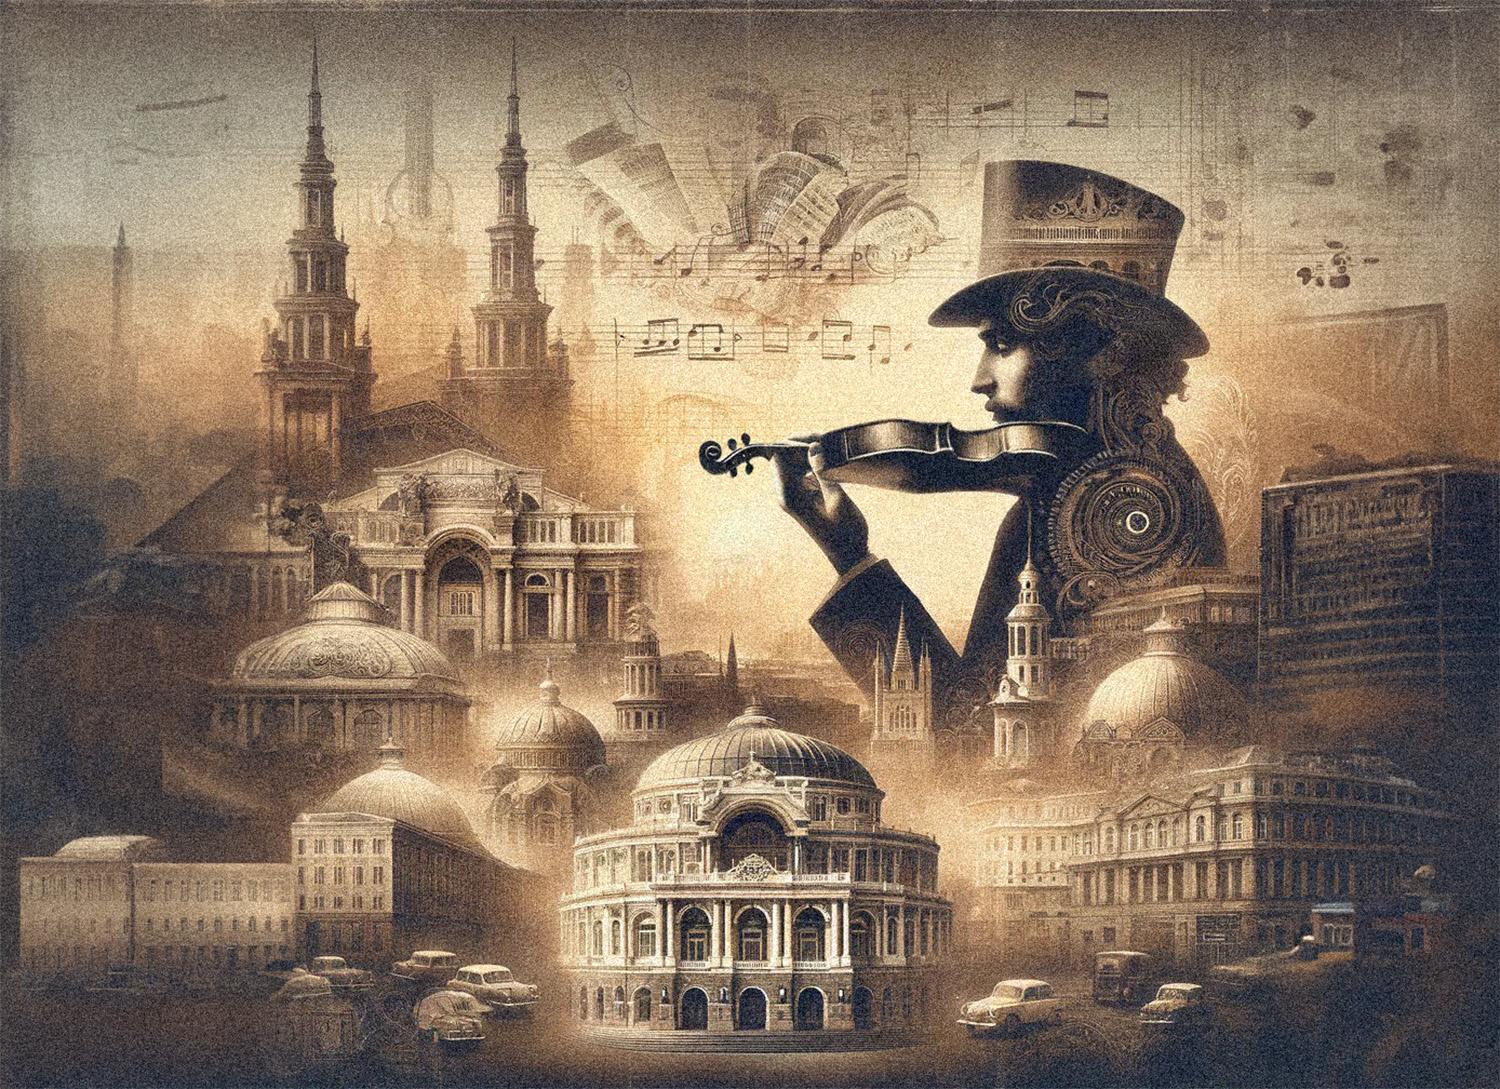 ОДЕССИТ СРЕДИ СКРИПАЧЕЙ: Майкл Гуттман об одесских корнях мировой скрипичной школы